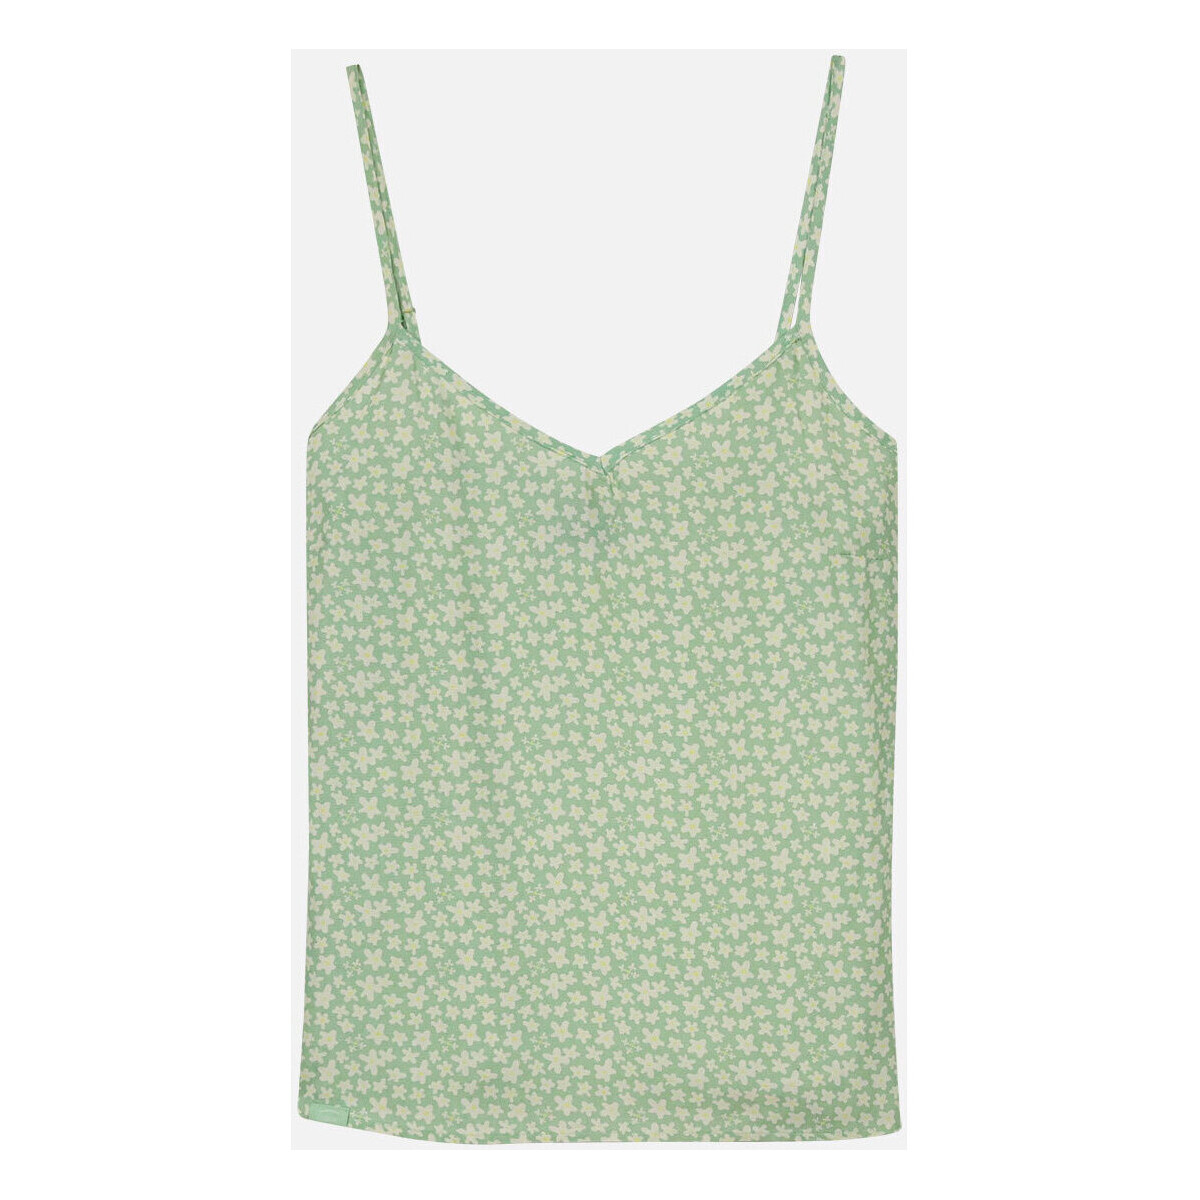 Vêtements Femme T-shirts manches courtes Oxbow Top bretelle imprimé CARMELIA Vert